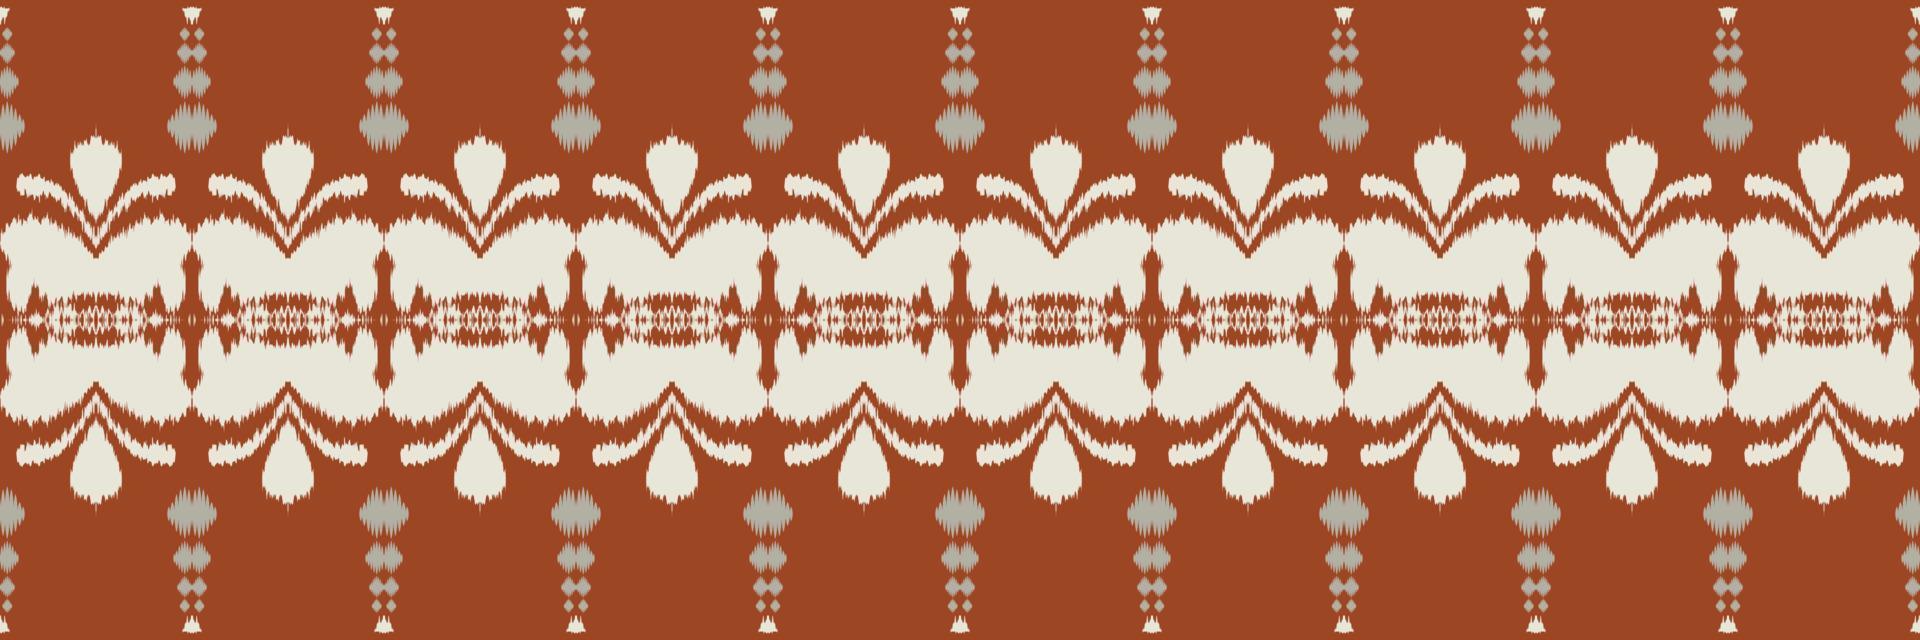 ikat blommig stam- korsa sömlös mönster. etnisk geometrisk batik ikkat digital vektor textil- design för grafik tyg saree mughal borsta symbol strängar textur kurti kurtis kurtas